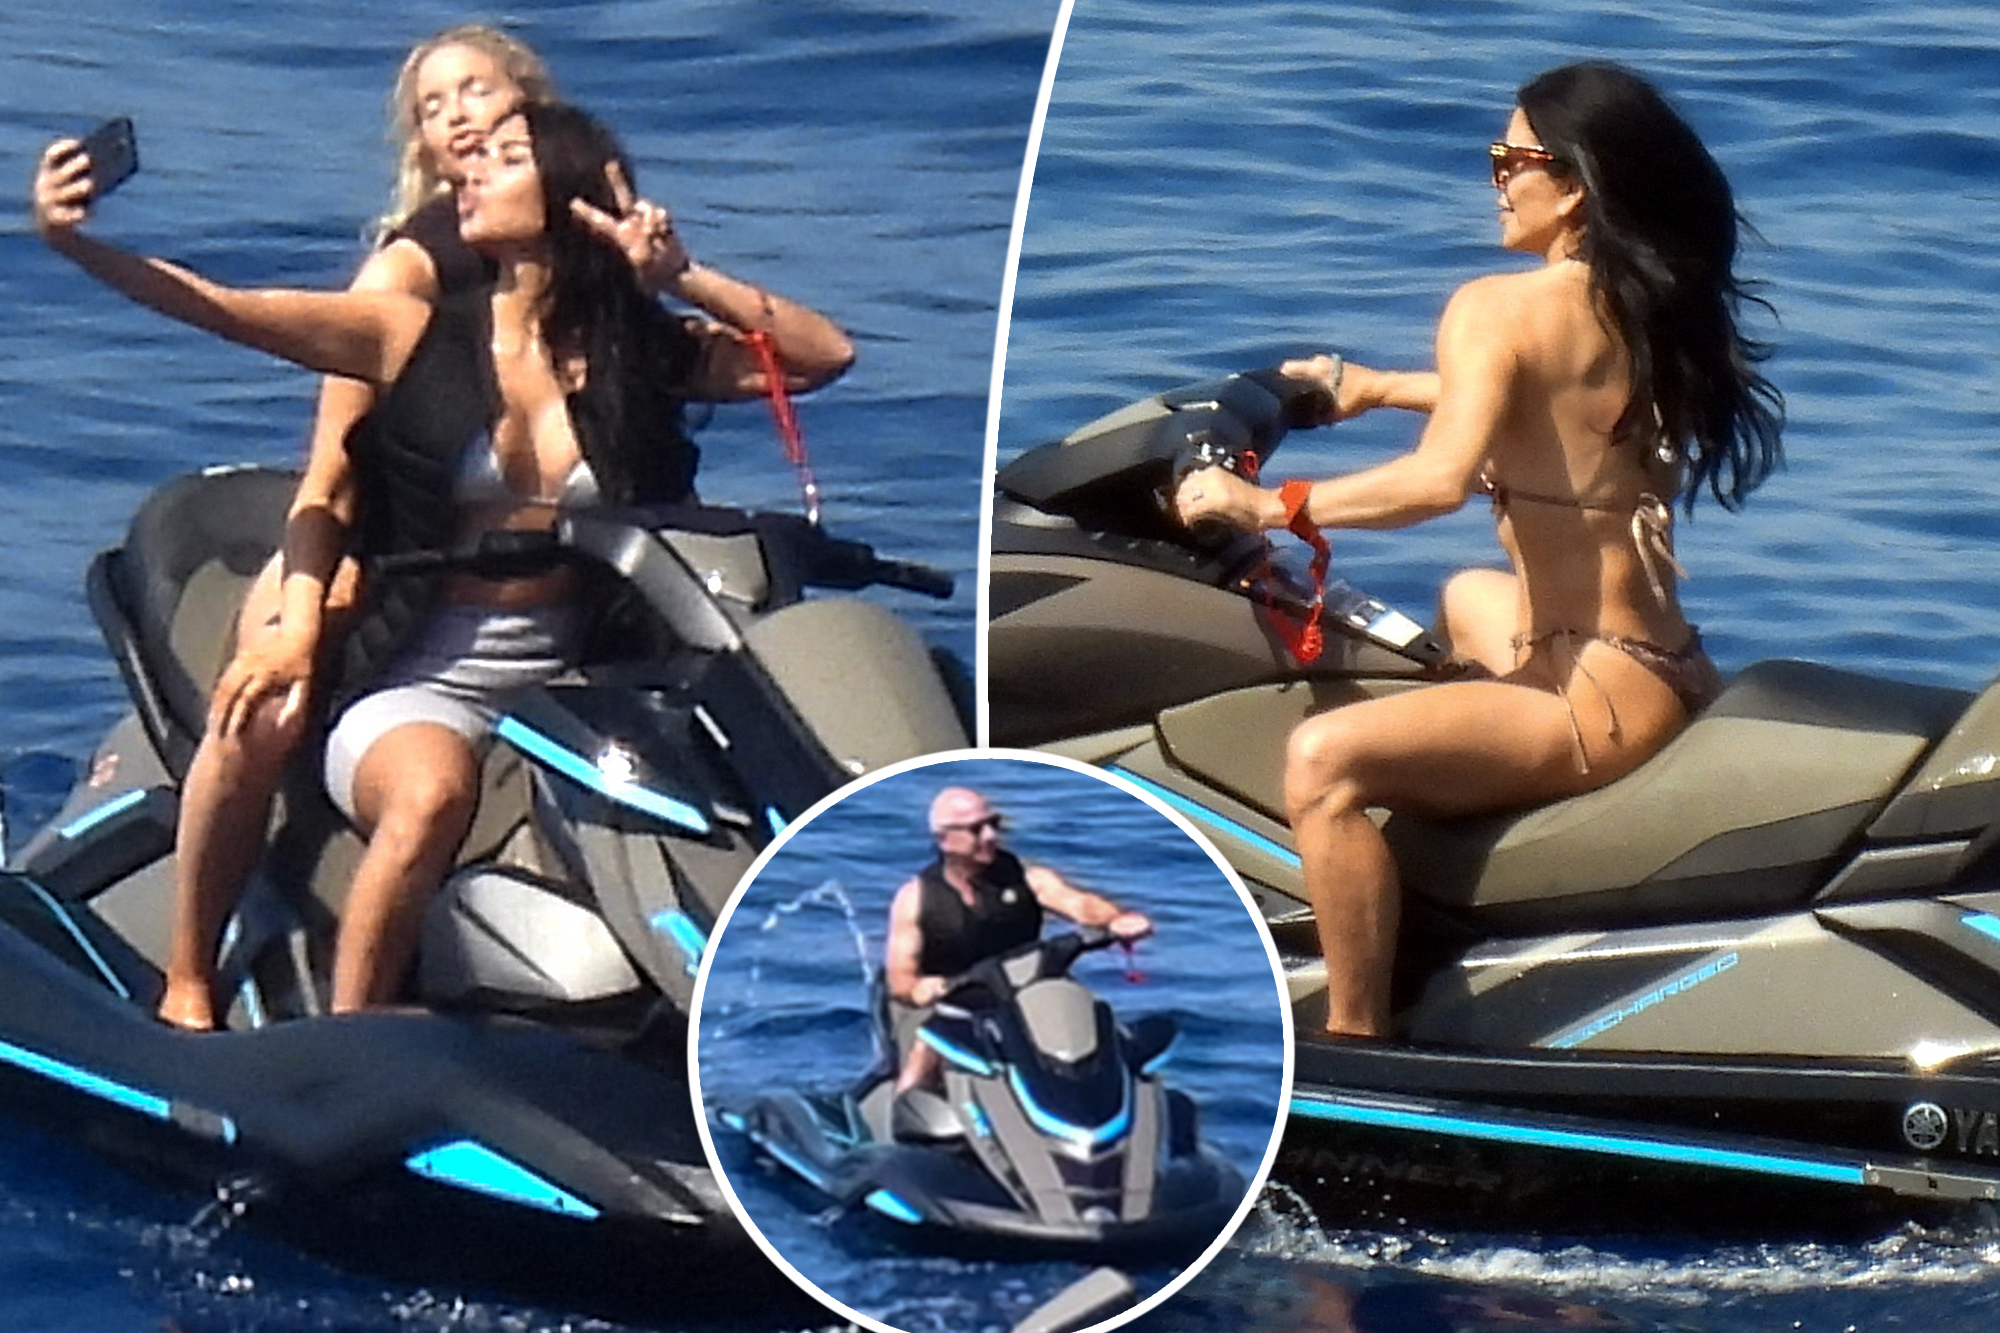 Jet Ski Fun in Greece: Jeff Bezos, Lauren Sánchez, and Kim Kardashian Soak Up the Sun